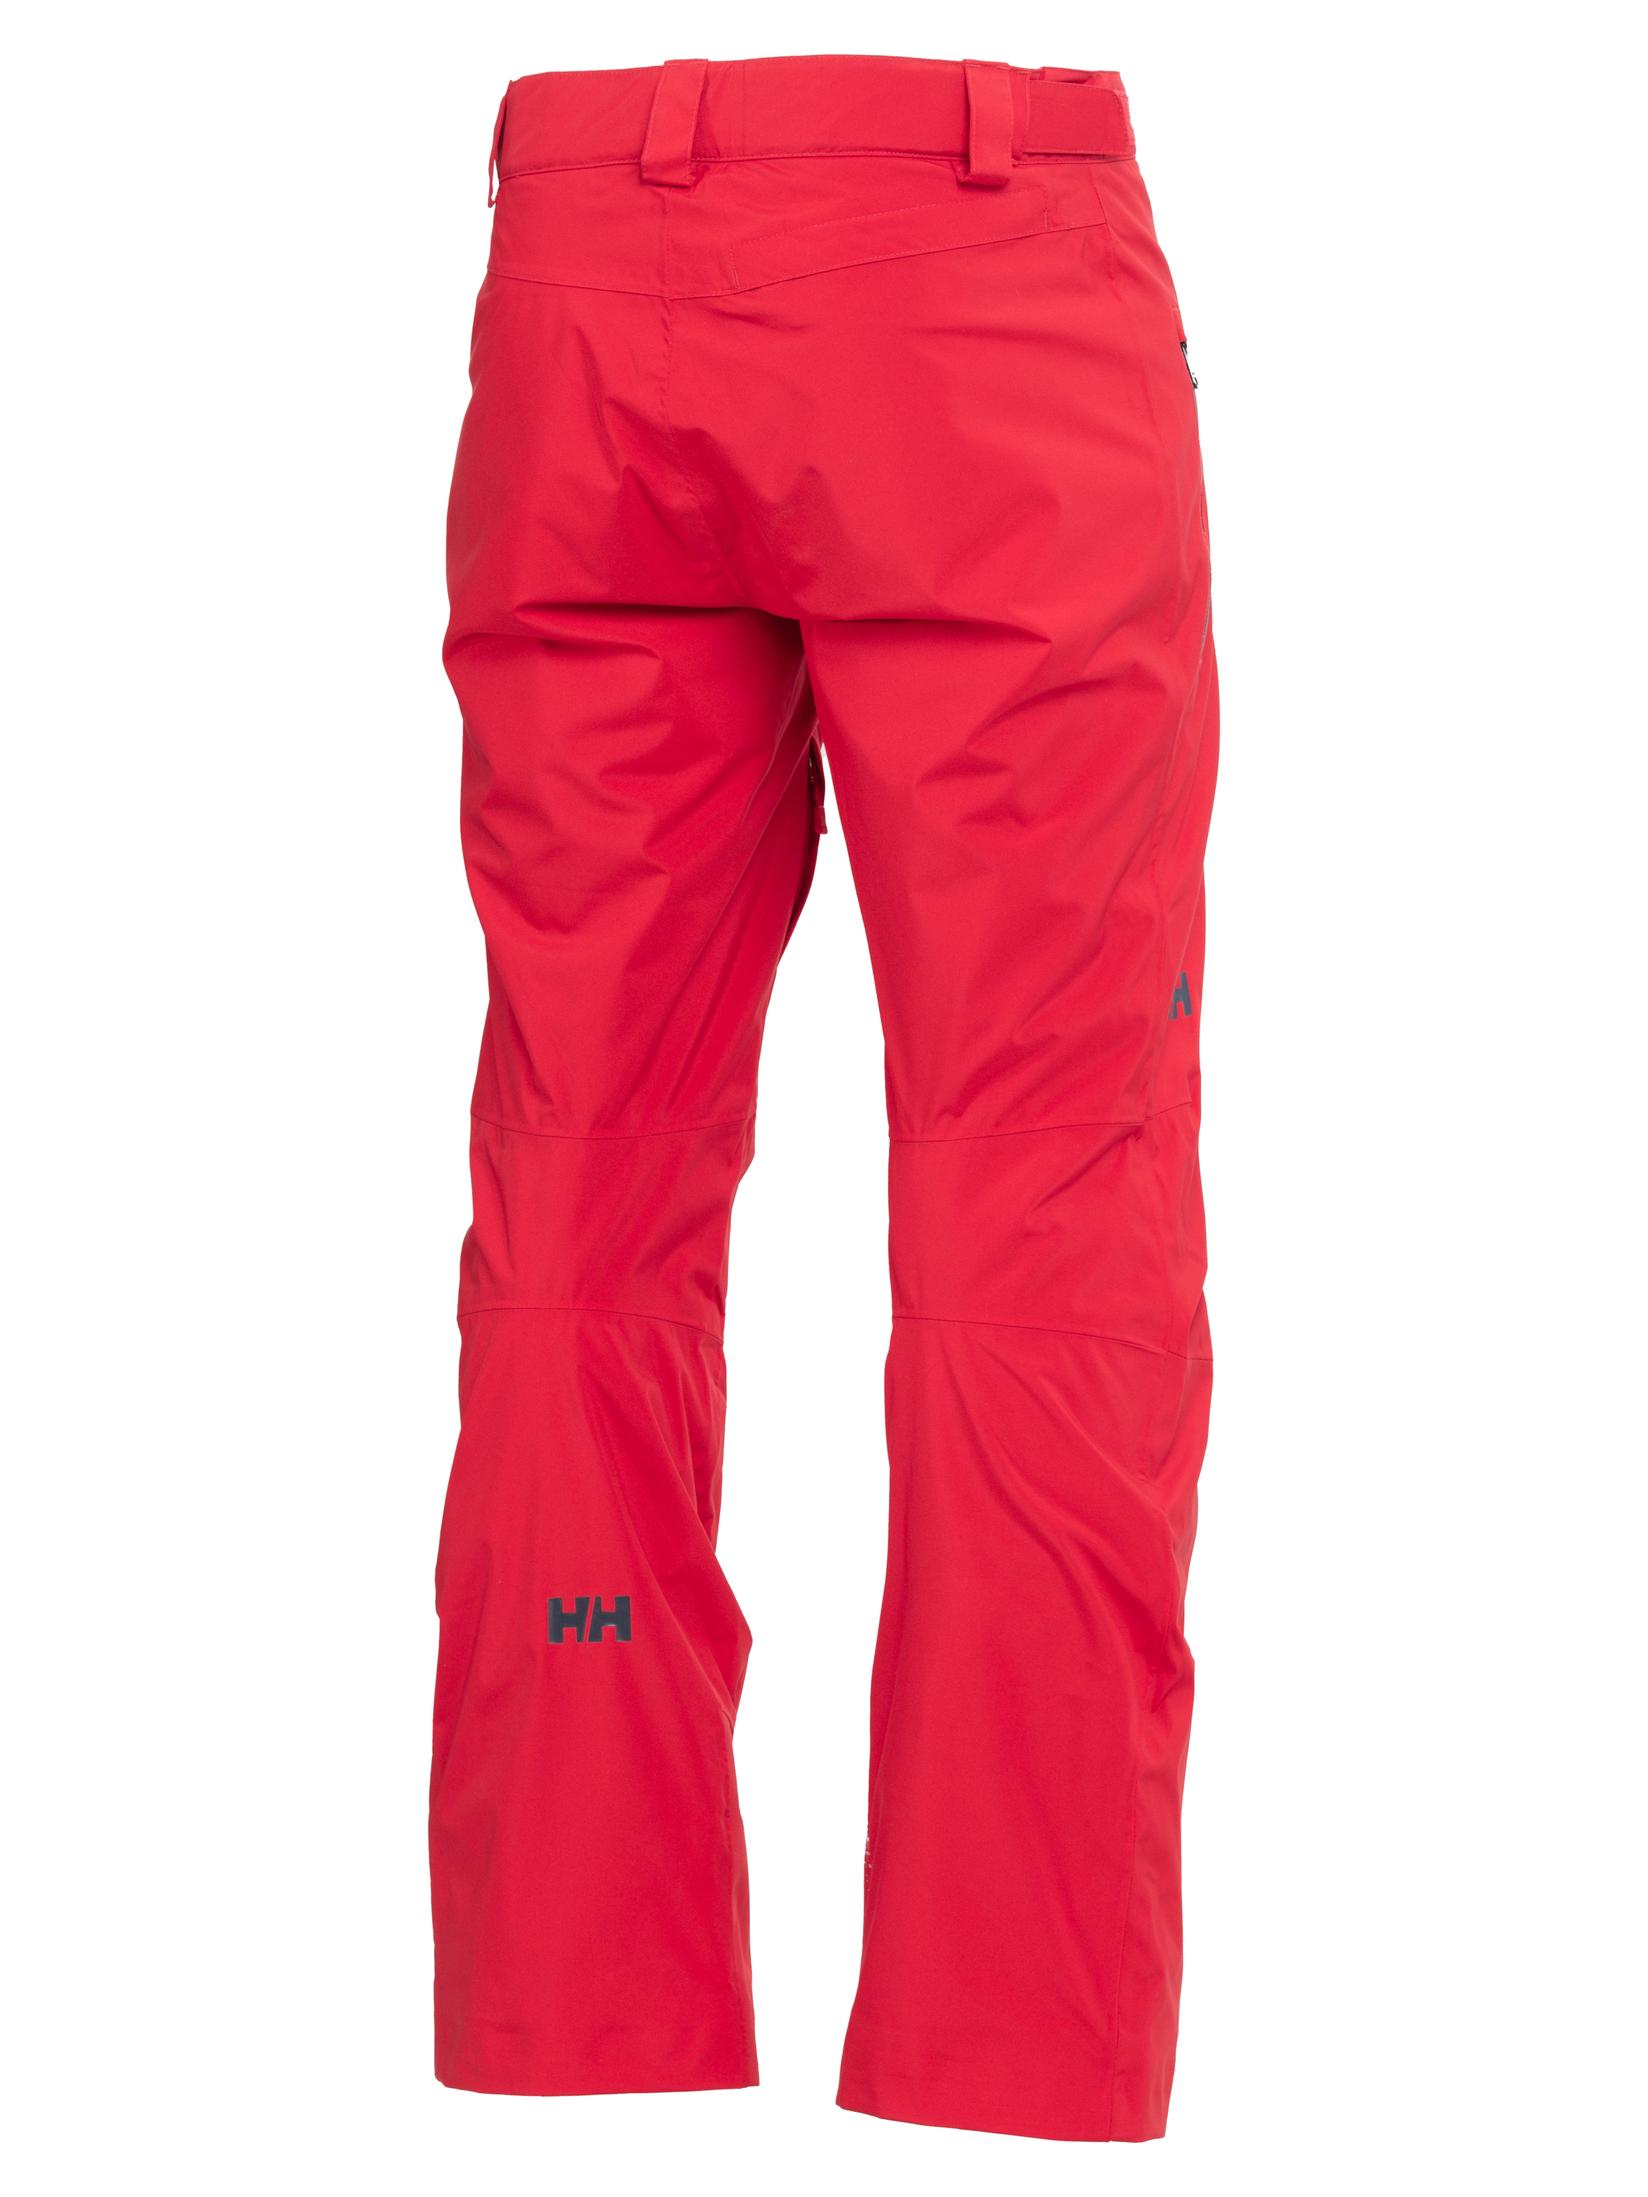 Selected image for HELLY HANSEN Muške ski pantalone Legendary Insulat HH-65704 crvene